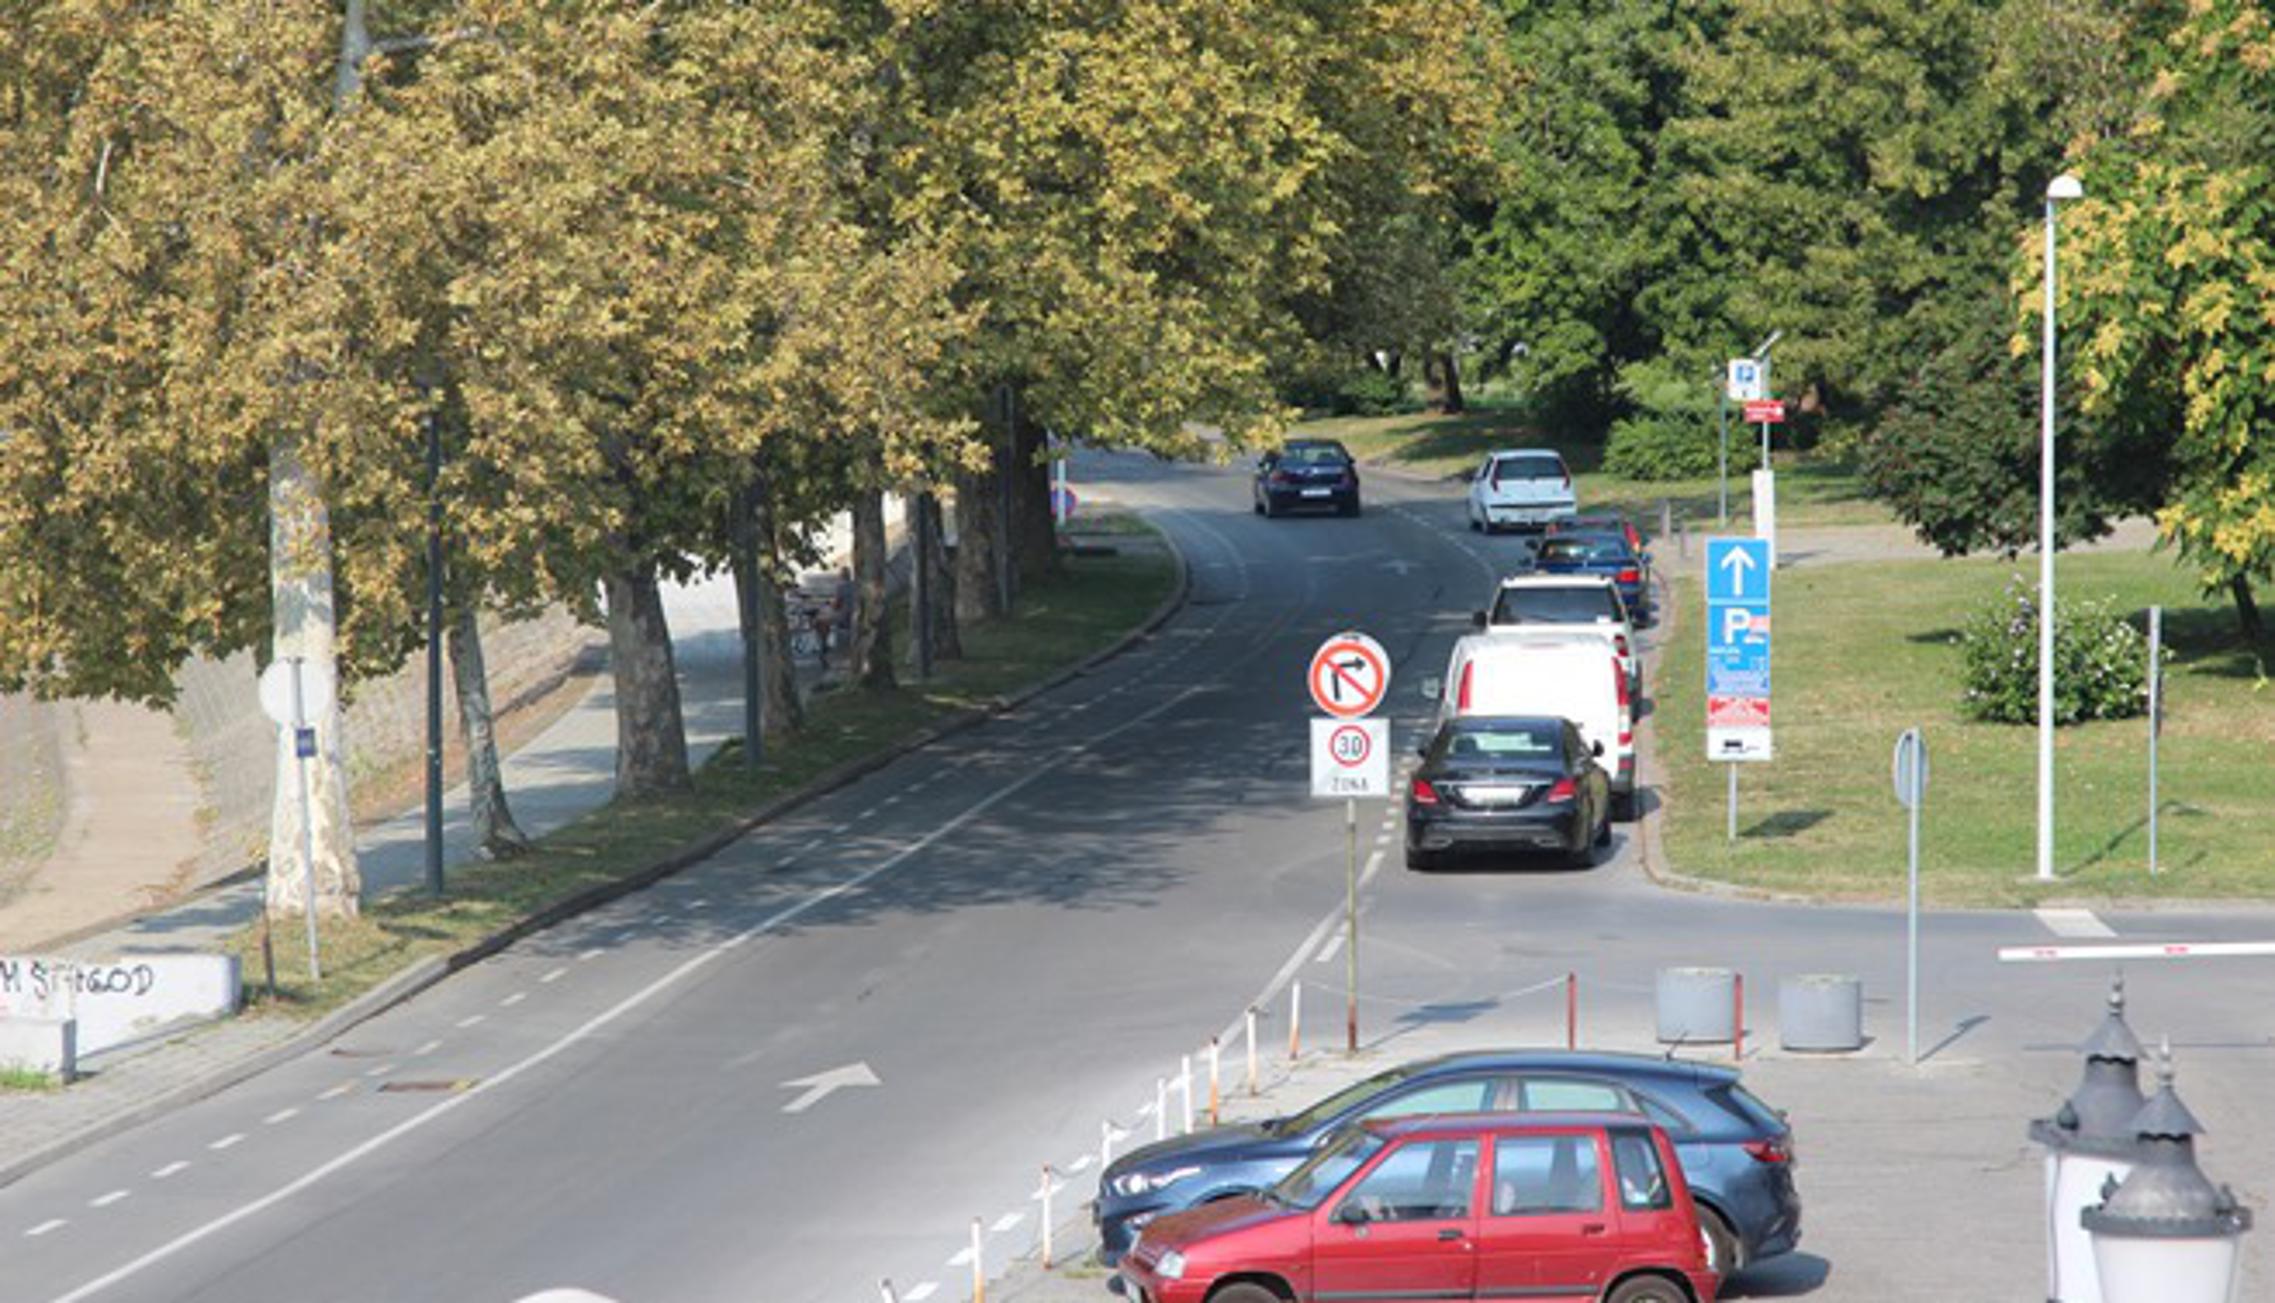 Šetalište braće Radić također će biti zatvoreno za promet